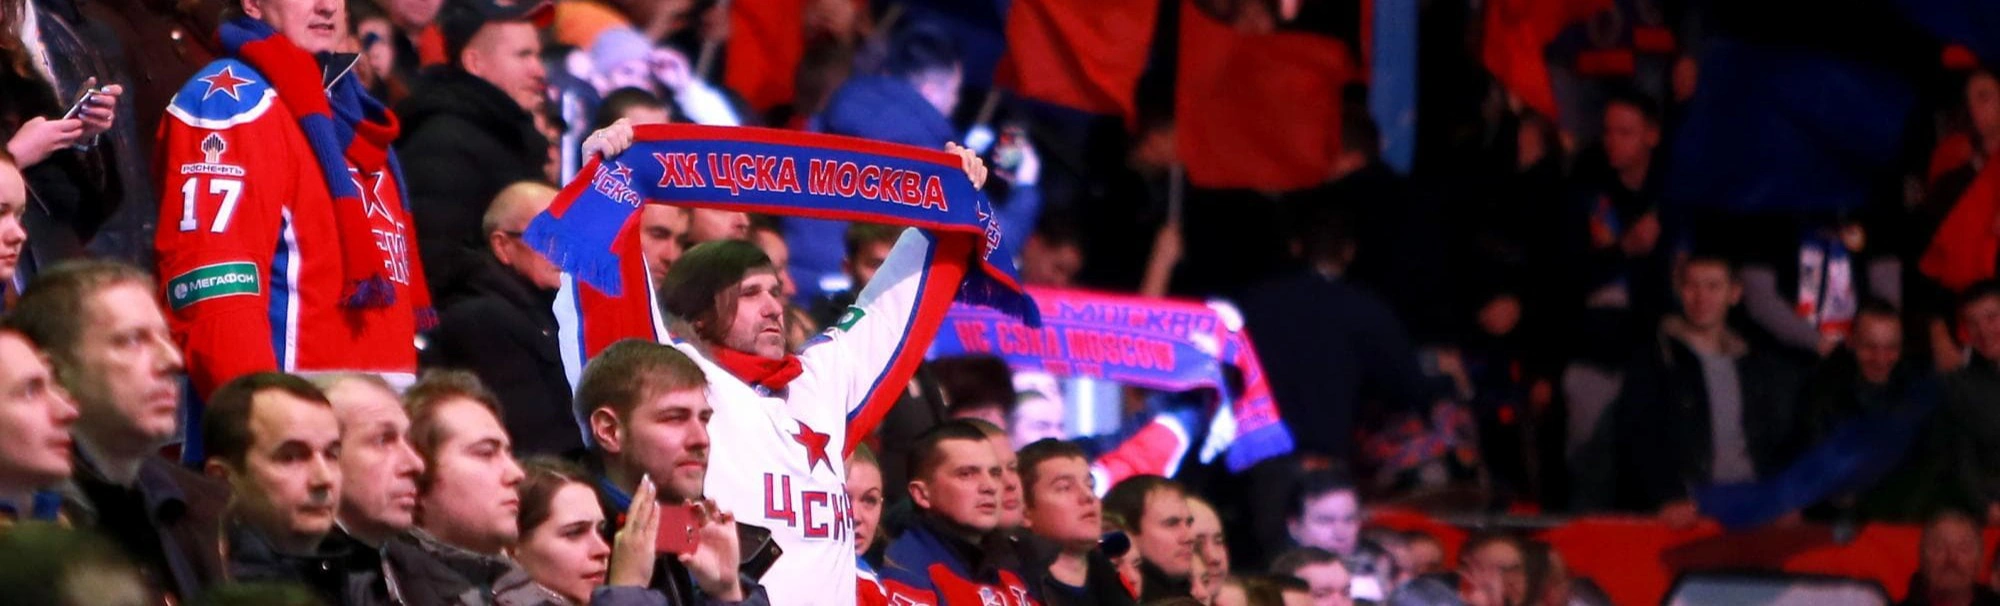 ЦСКА проиграл «Трактору», прервав 5-матчевую серию побед
